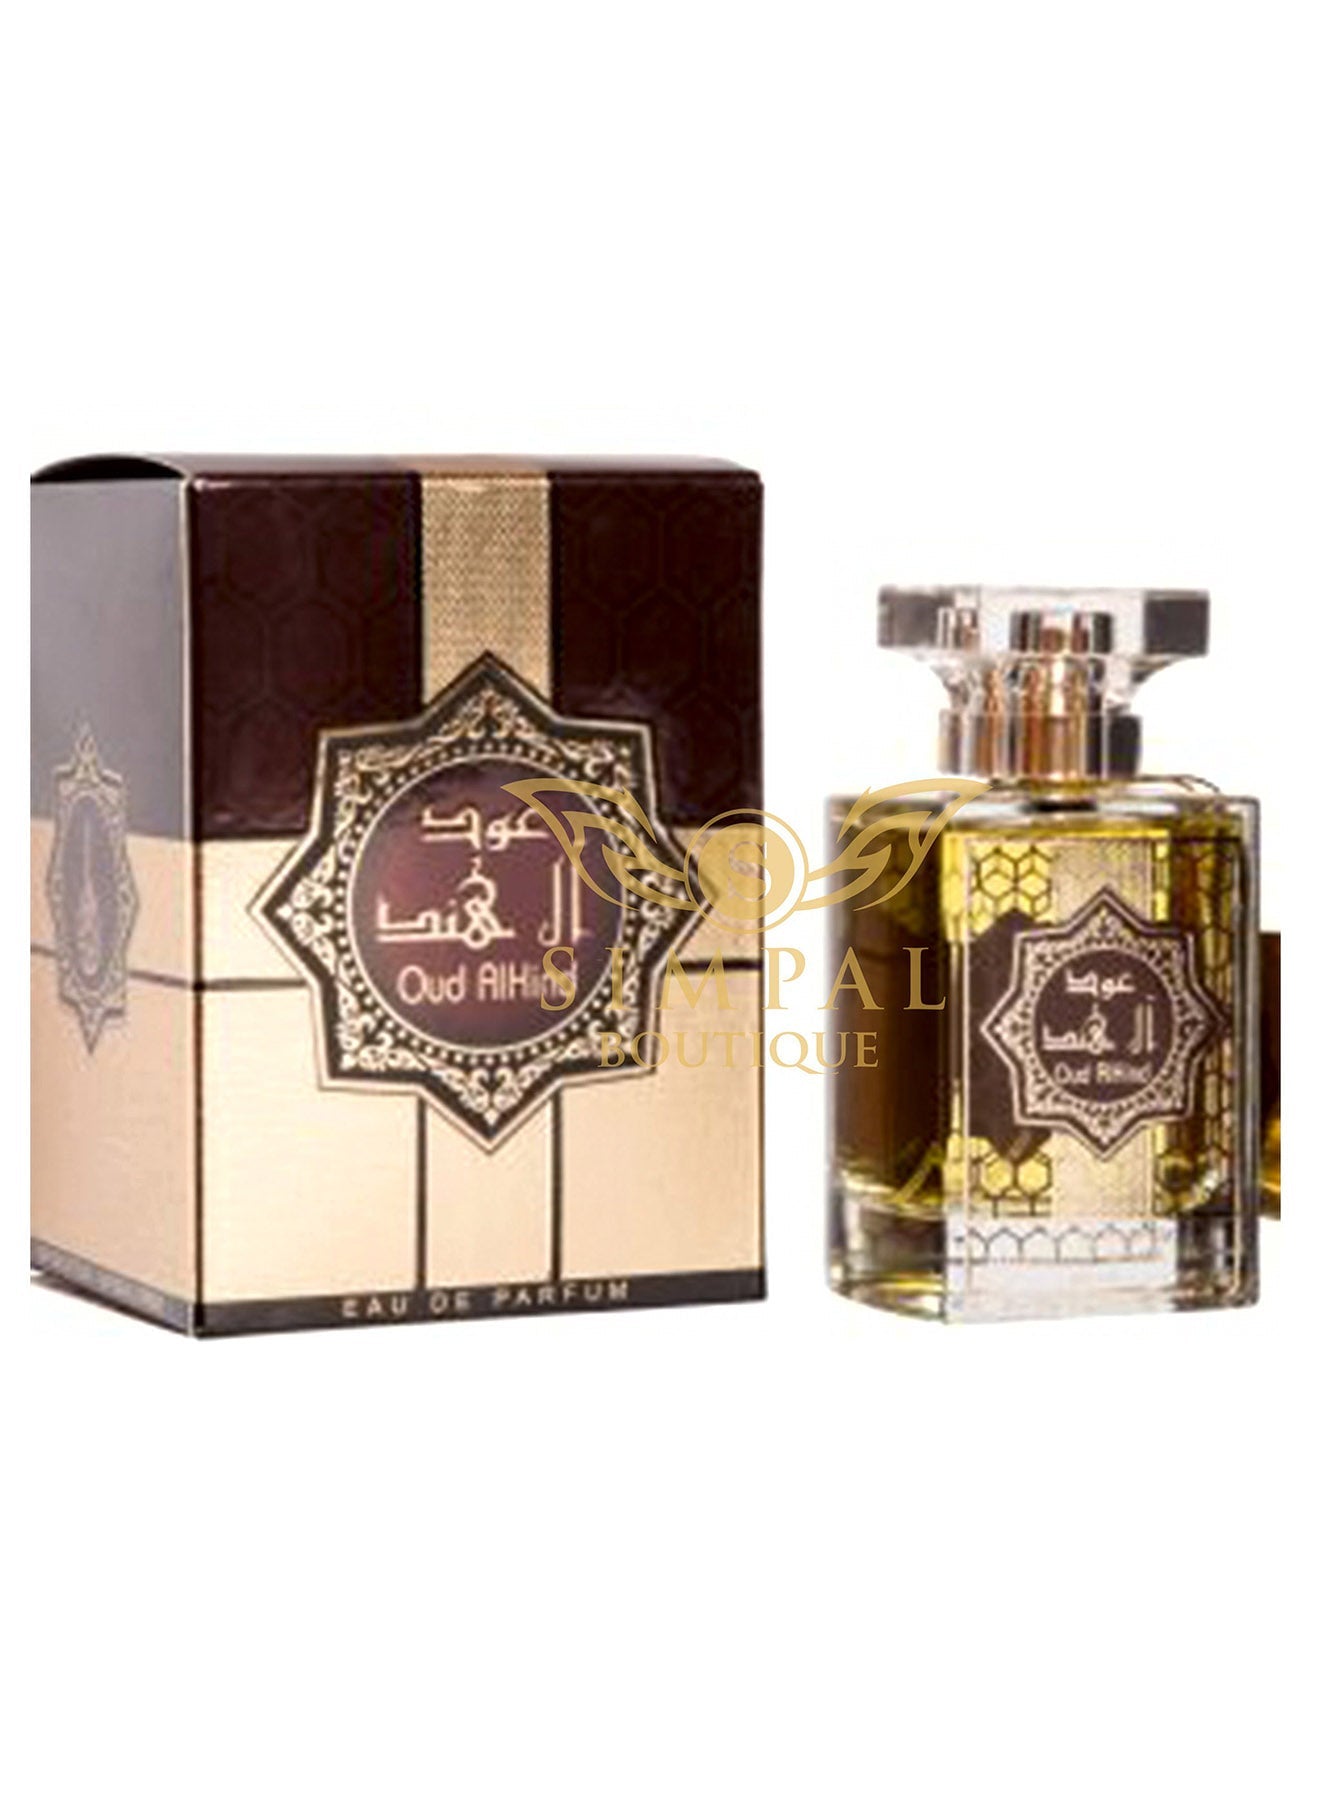 Oud Alhind Eau De Parfum 100ml Value Pack of 2 